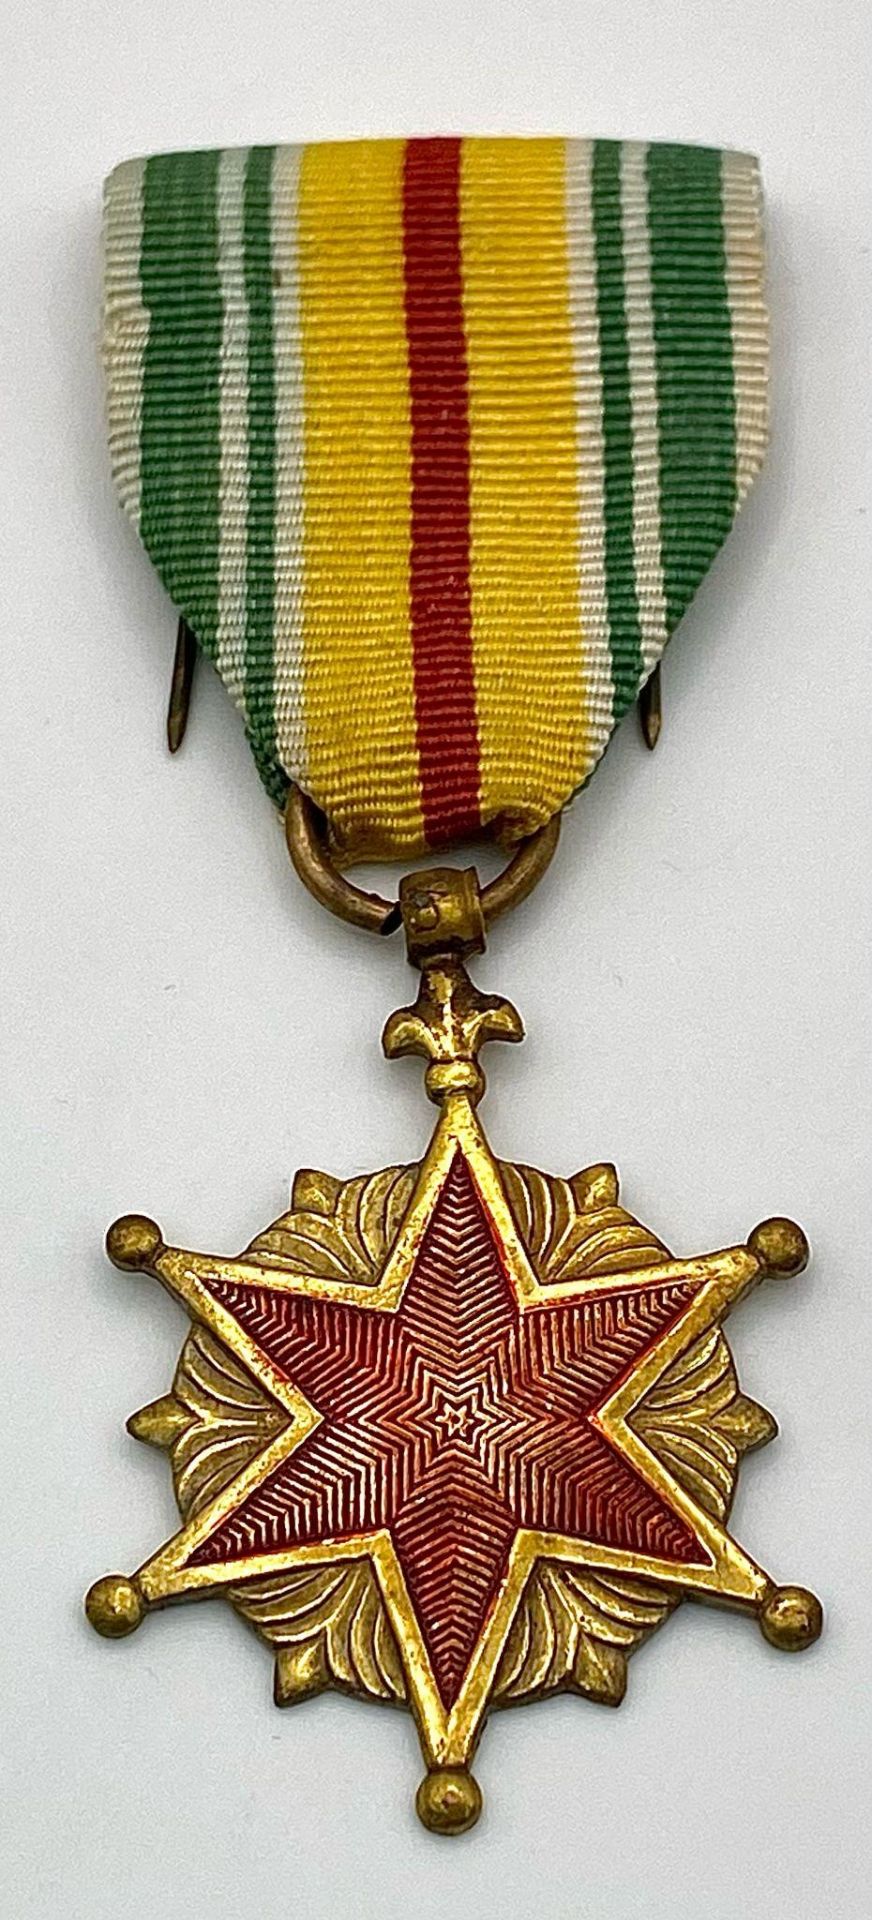 Vietnam War Era ARVN Battle Wound (Saigon Hero) Medal - Image 2 of 6